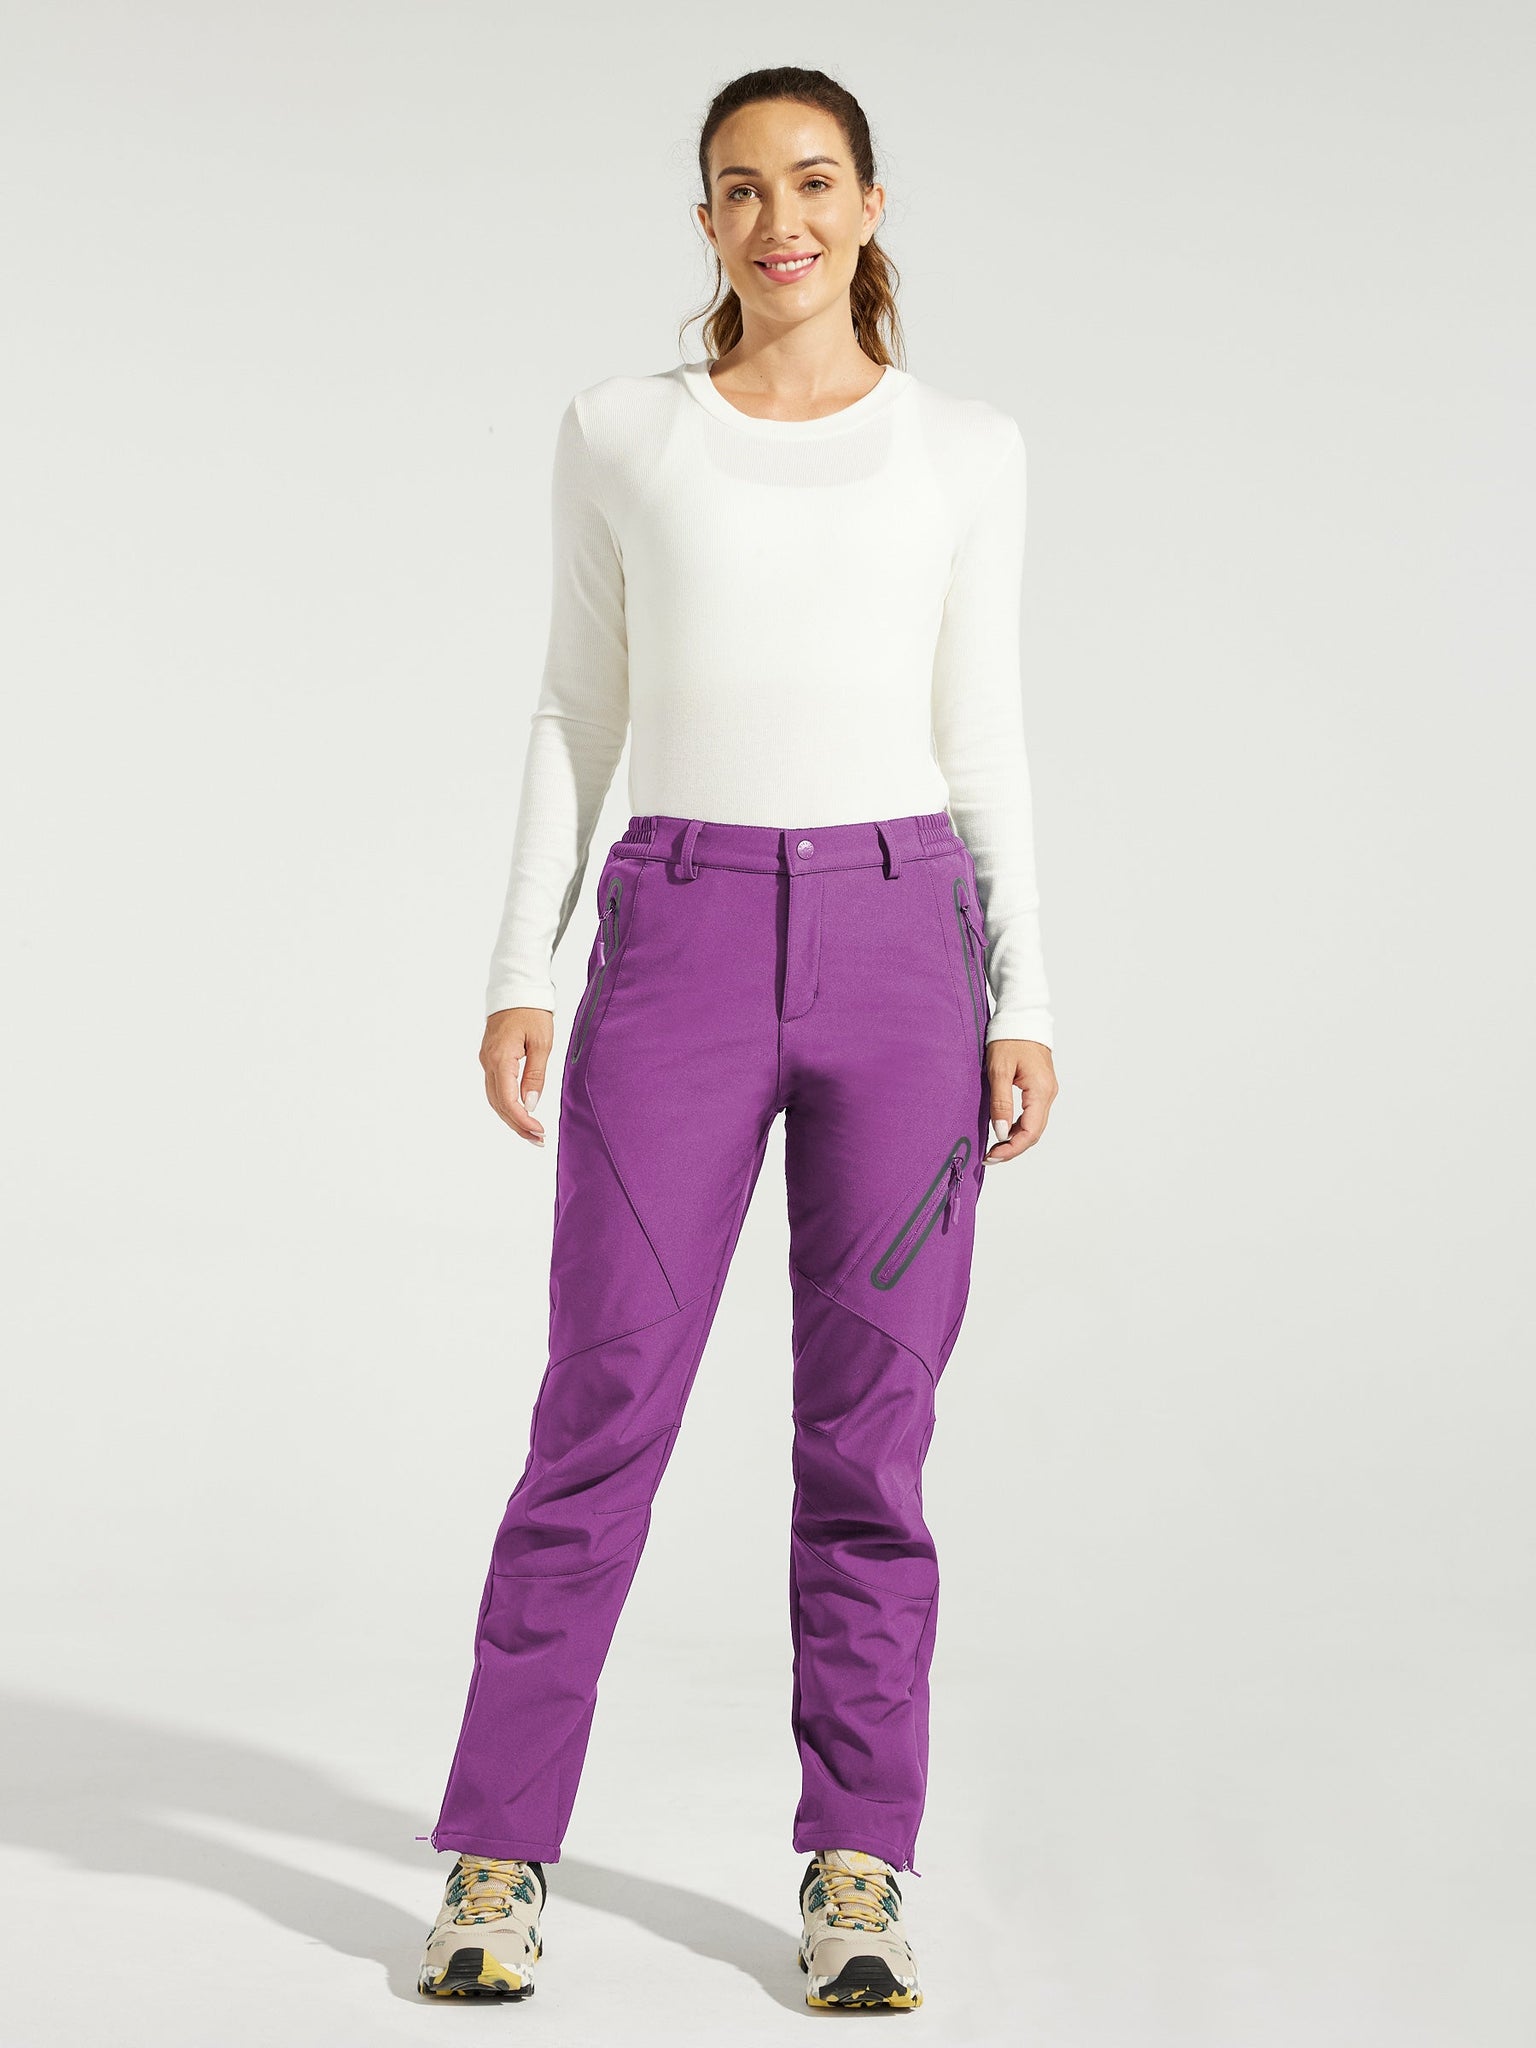 Women's Fleece Lined Snow Cargo Pants_Purple_model3